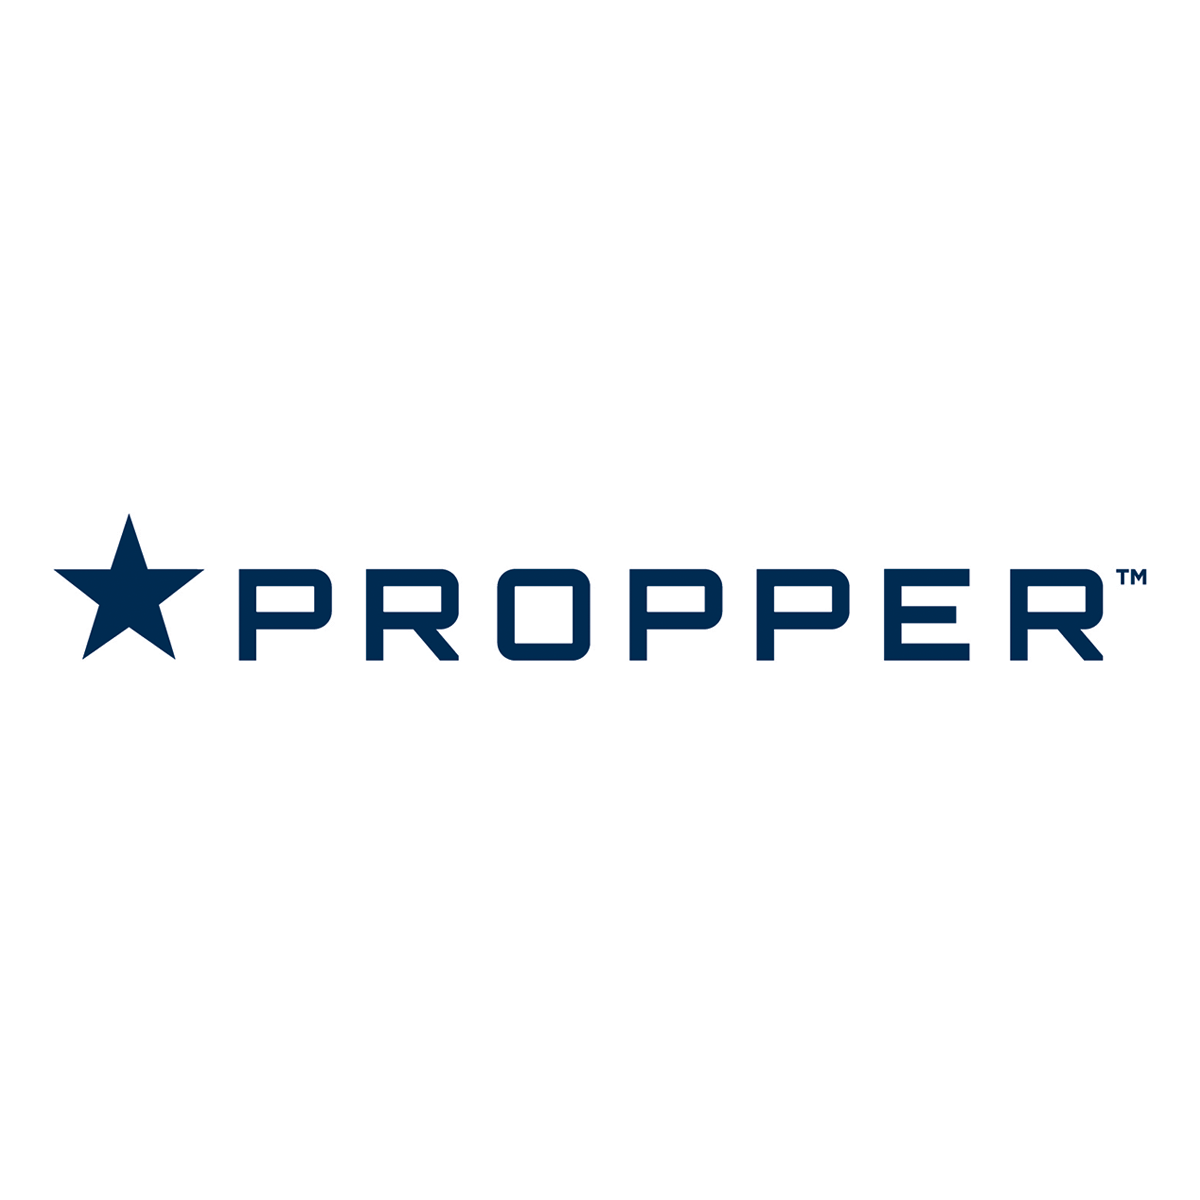 806-propper-1200x1200.png